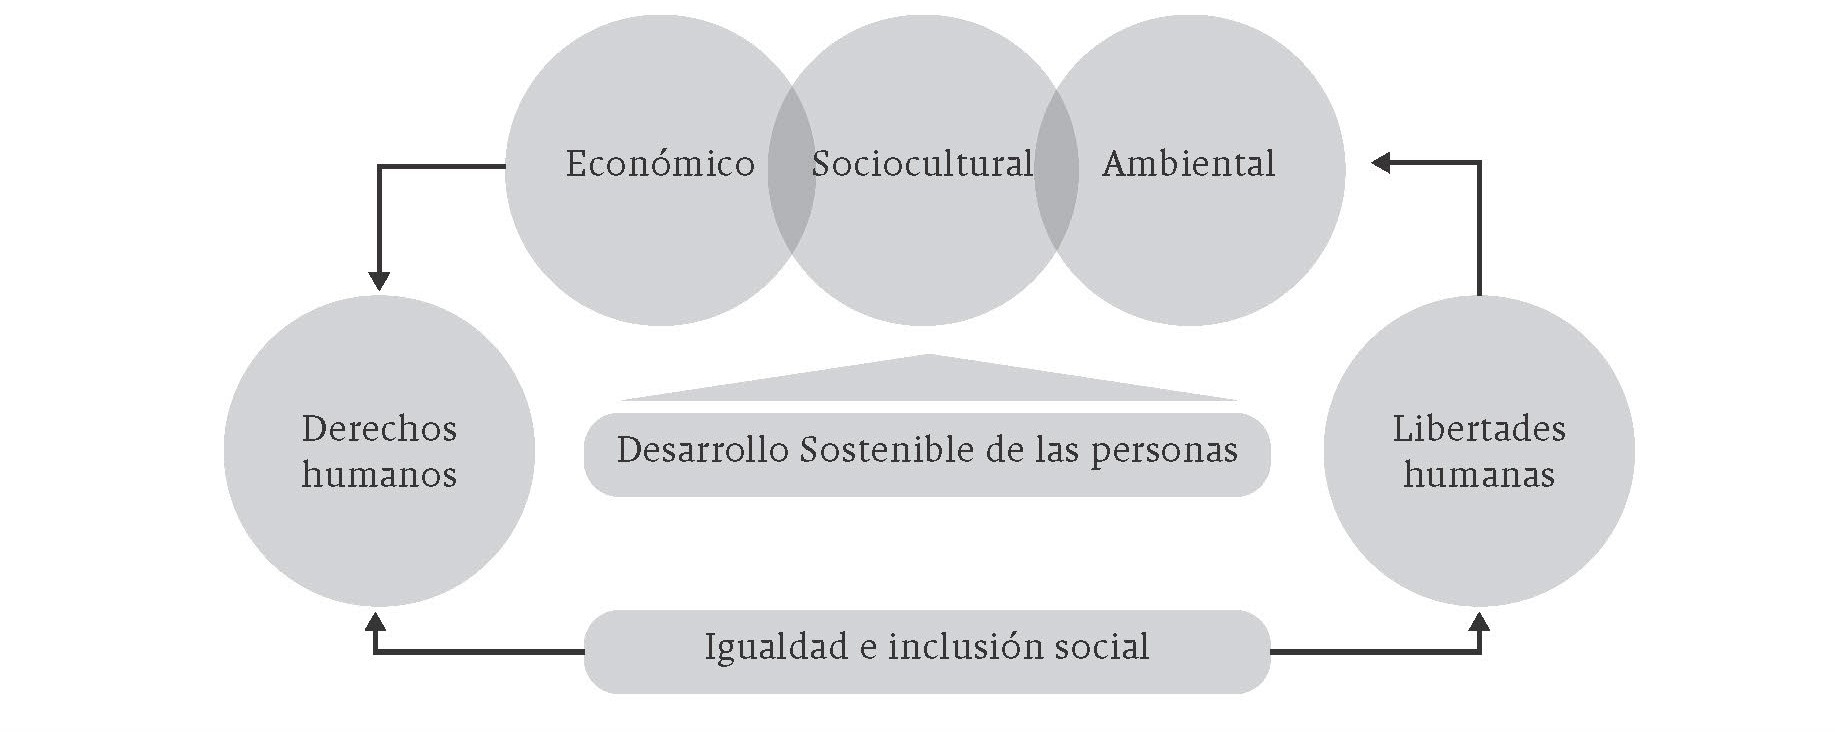 Desarrollo sostenible del trabajador a través del trabajo decente |  Sociedad y Economía